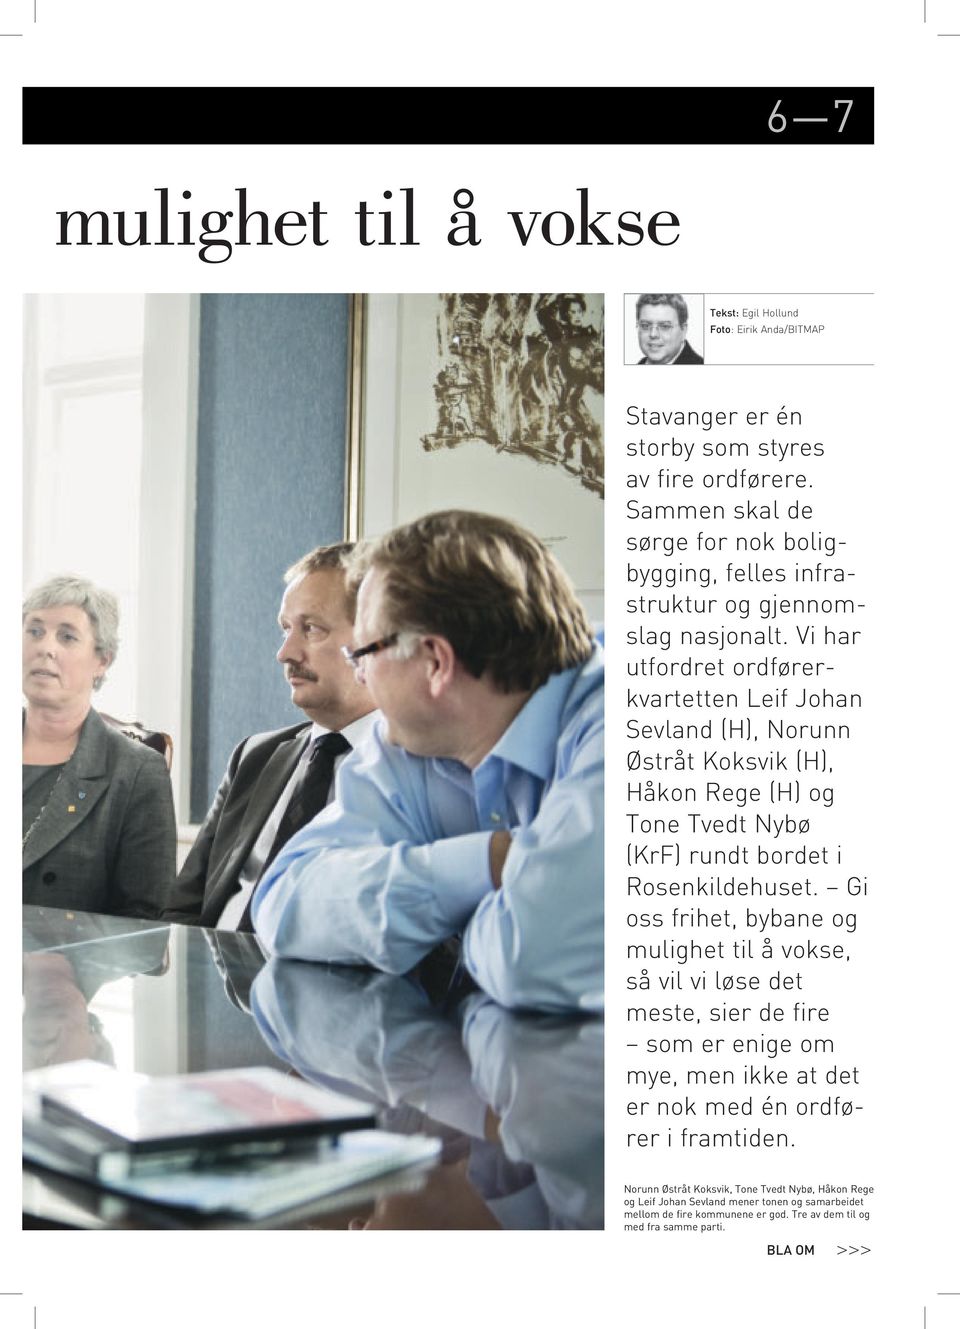 Vi har utfordret ordførerkvartetten Leif Johan Sevland (H), Norunn Østråt Koksvik (H), Håkon Rege (H) og Tone Tvedt Nybø (KrF) rundt bordet i Rosenkildehuset.